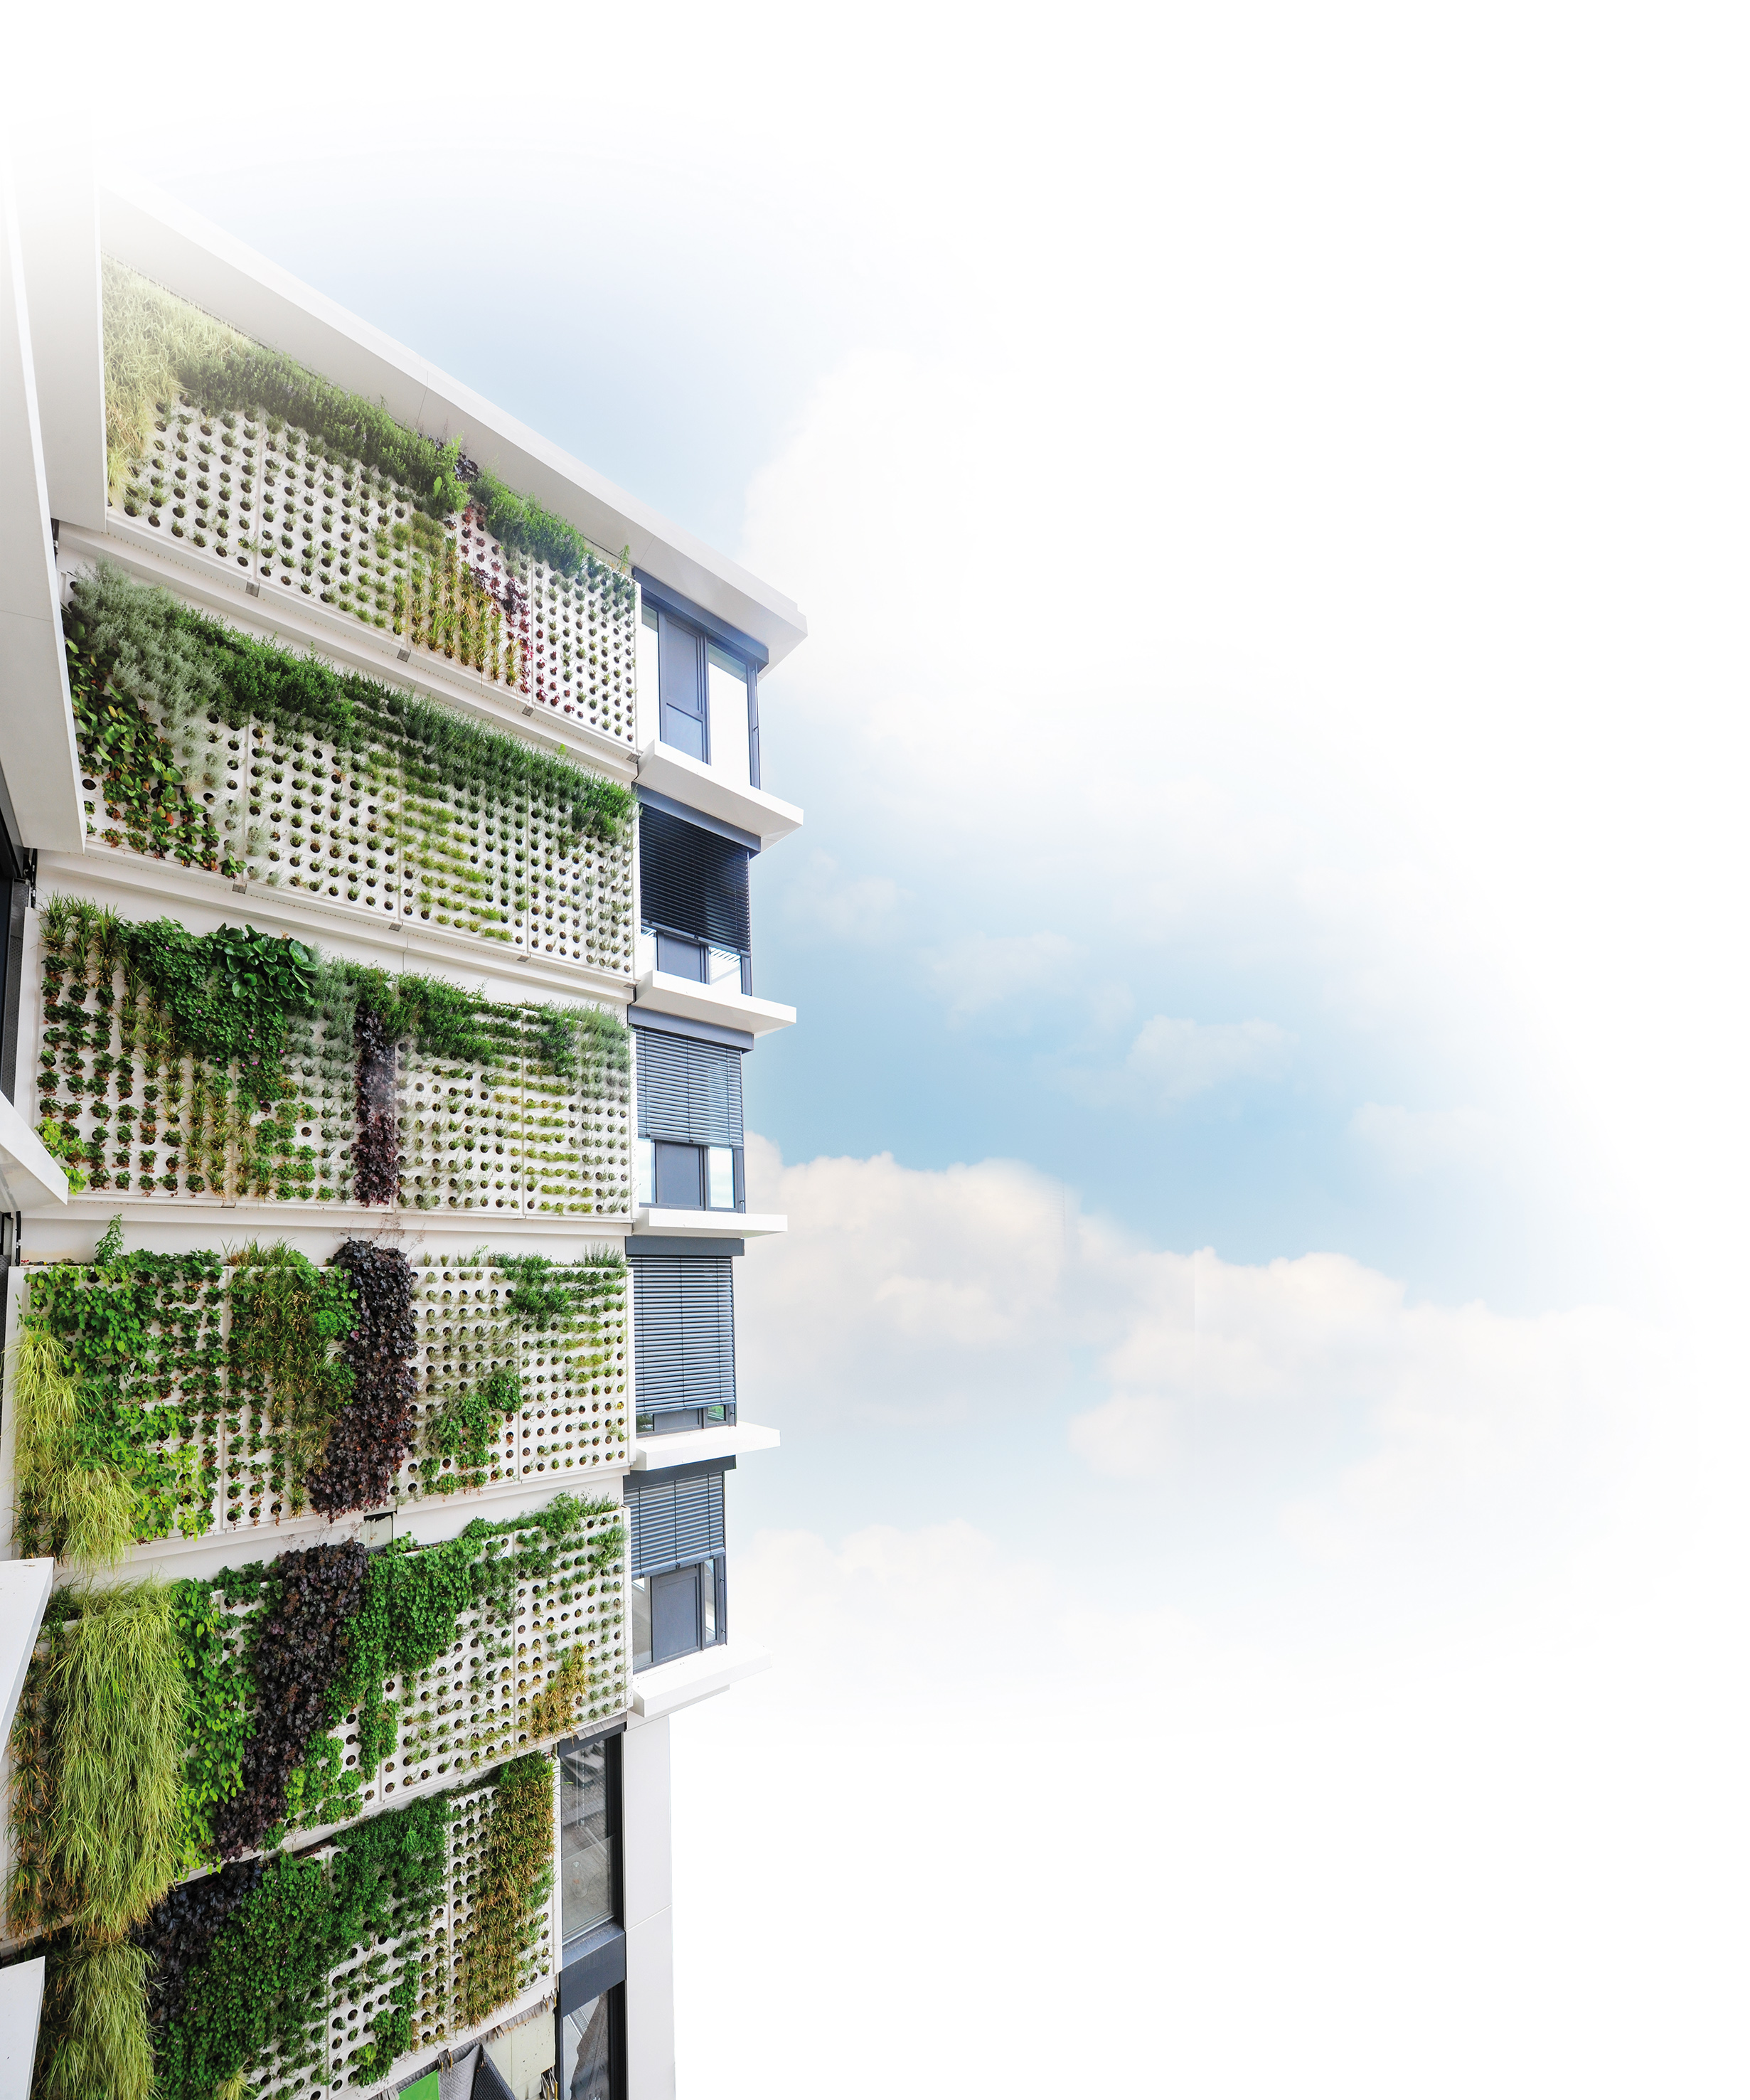 En lançant son nouveau mur végétalisé « Adam », la société Richard Brink propose une solution innovante pour végétaliser de larges surfaces de façade.